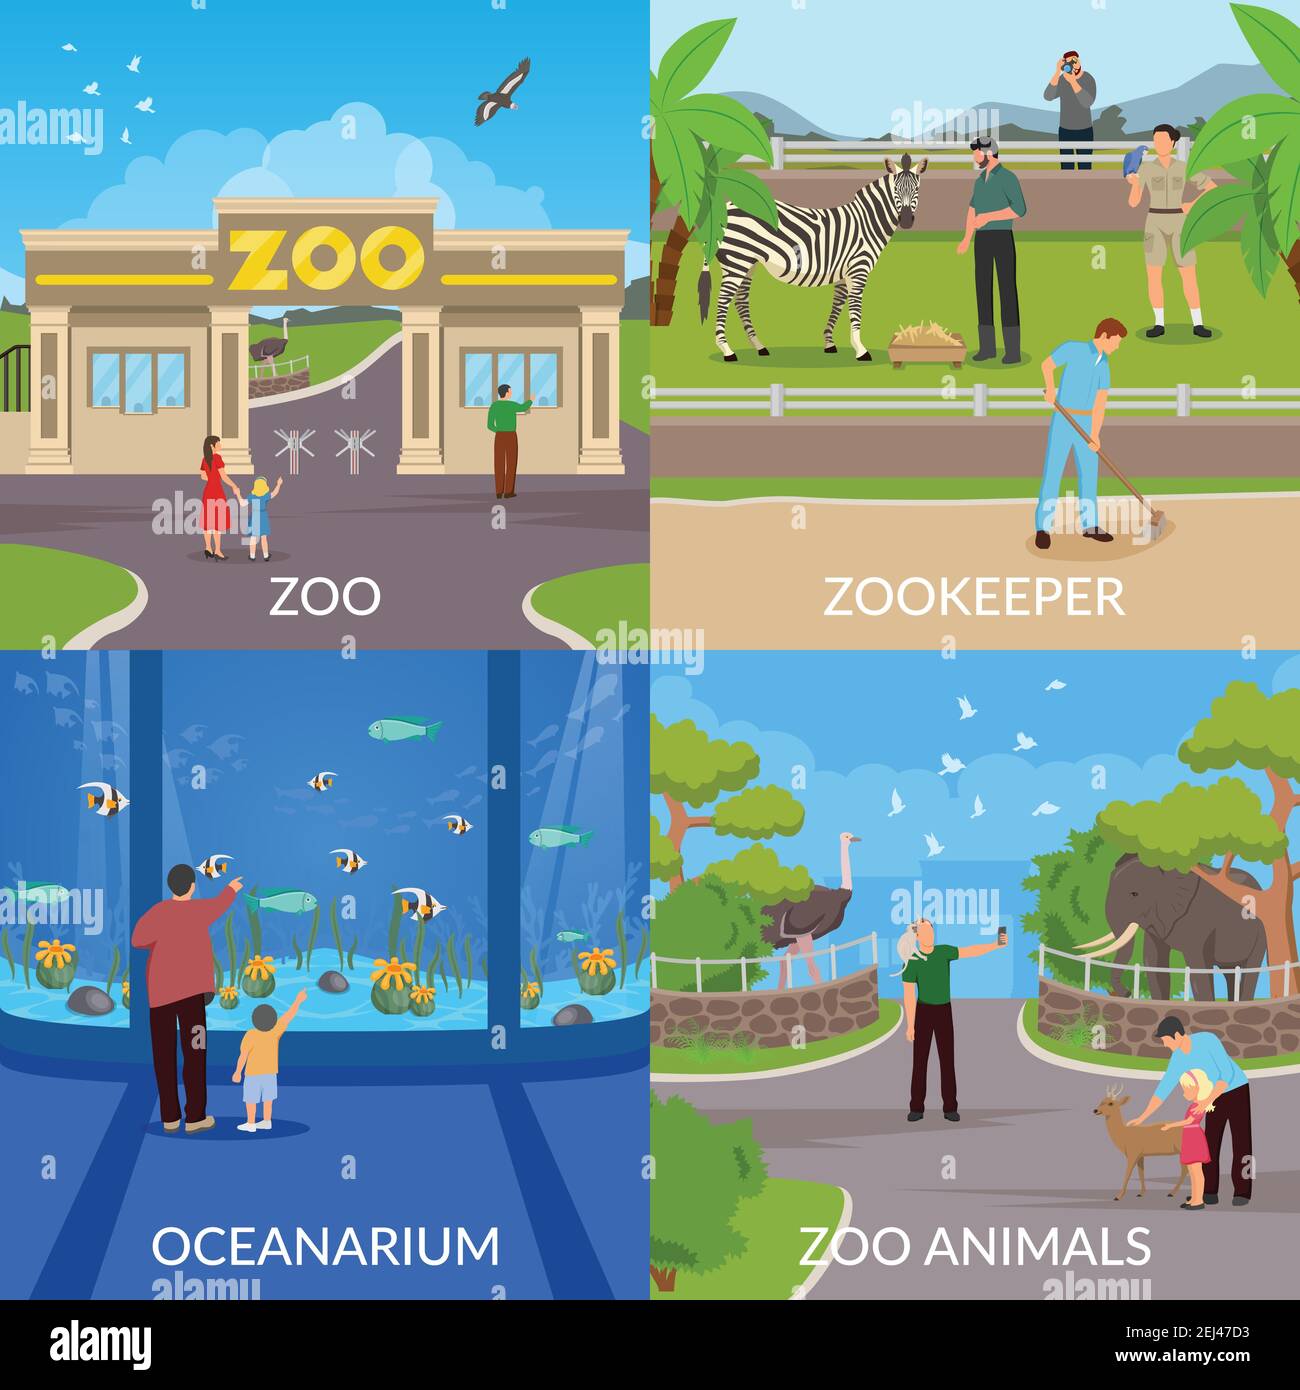 Zoo 2x2 Design-Konzept Set der Eintrag in Zoo Zookeeper ozeanarium und Tiere quadratische flache Symbole Vektor-Illustration Stock Vektor